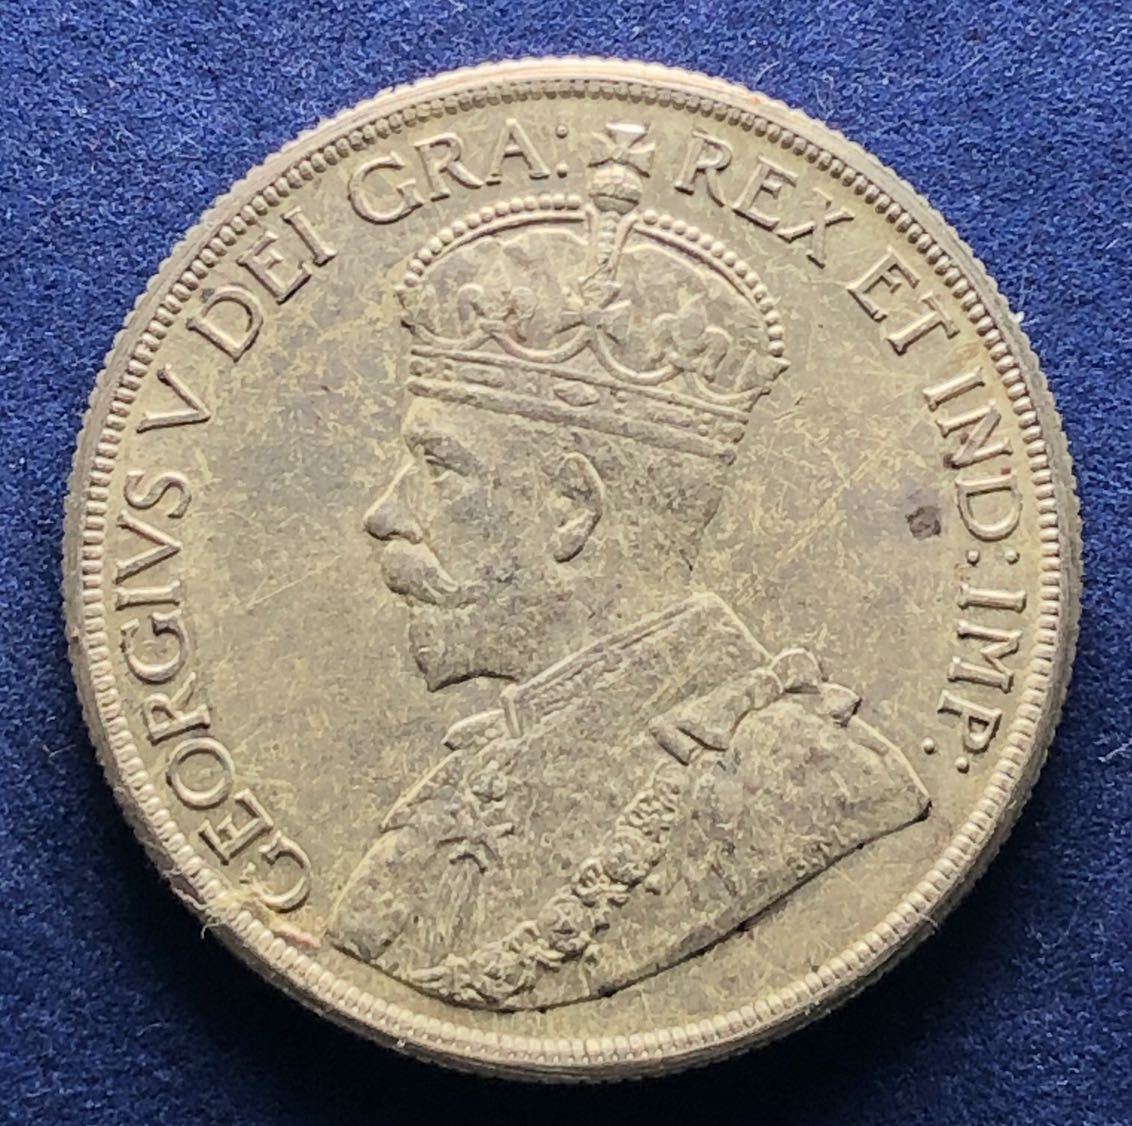  原文:イギリス領カナダ銀貨 1936年 1ドル 23.3g ジョージ5世 